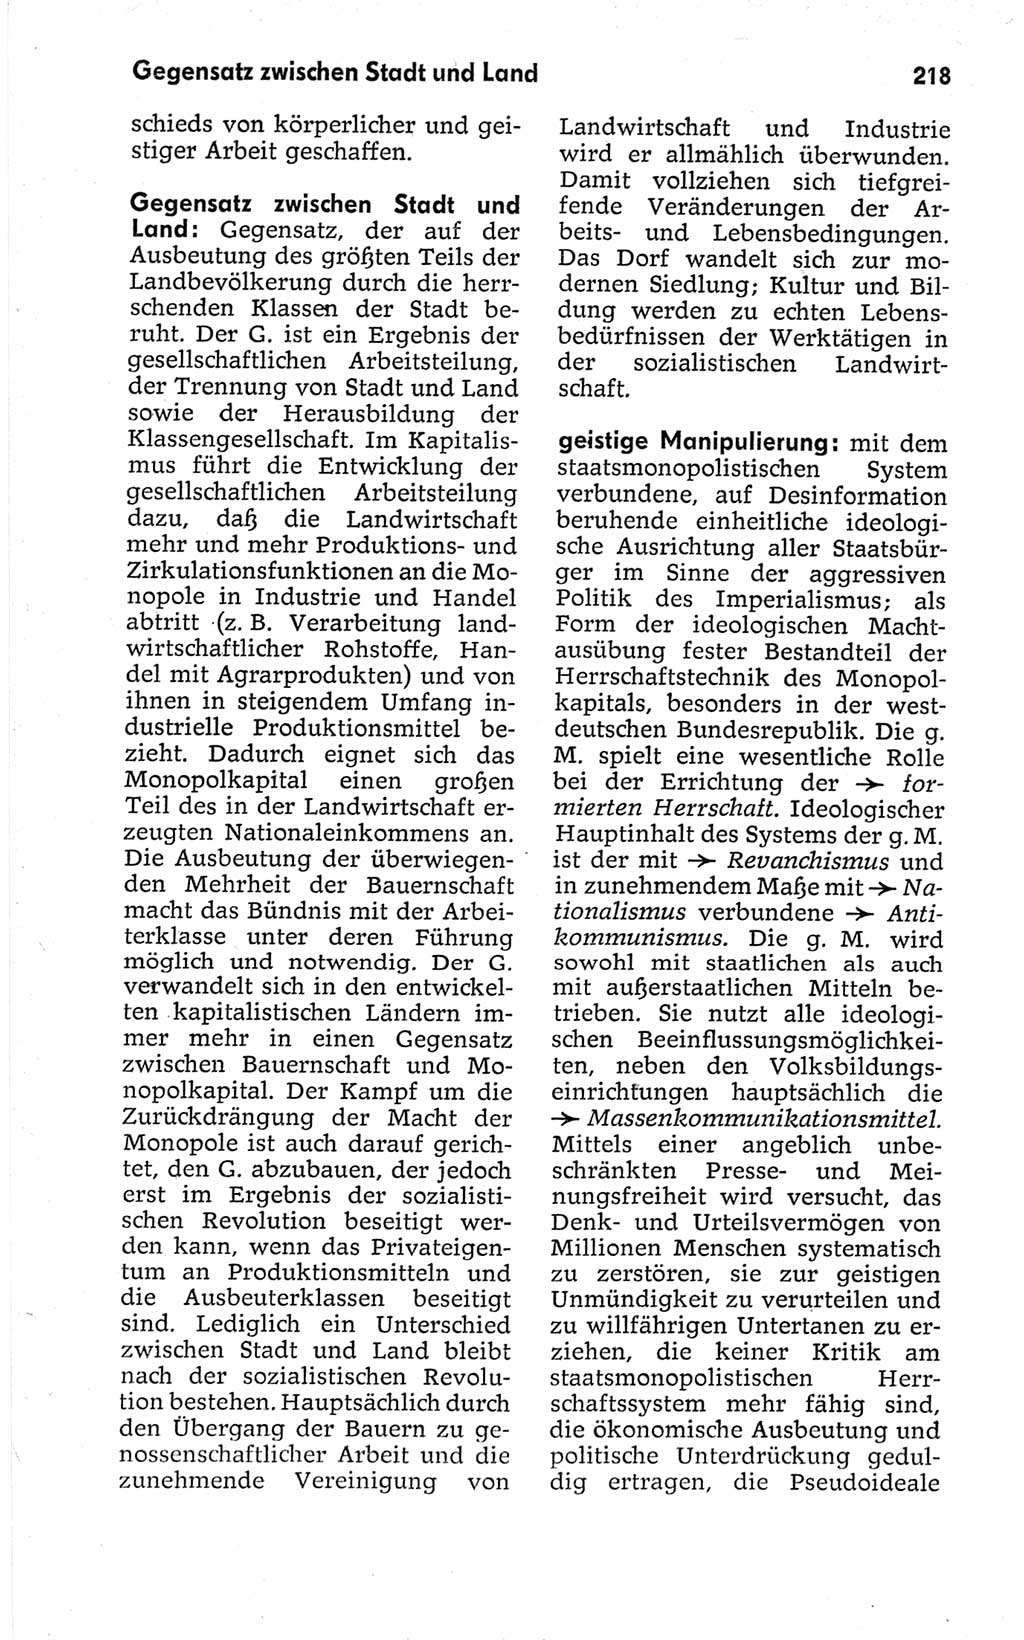 Kleines politisches Wörterbuch [Deutsche Demokratische Republik (DDR)] 1967, Seite 218 (Kl. pol. Wb. DDR 1967, S. 218)